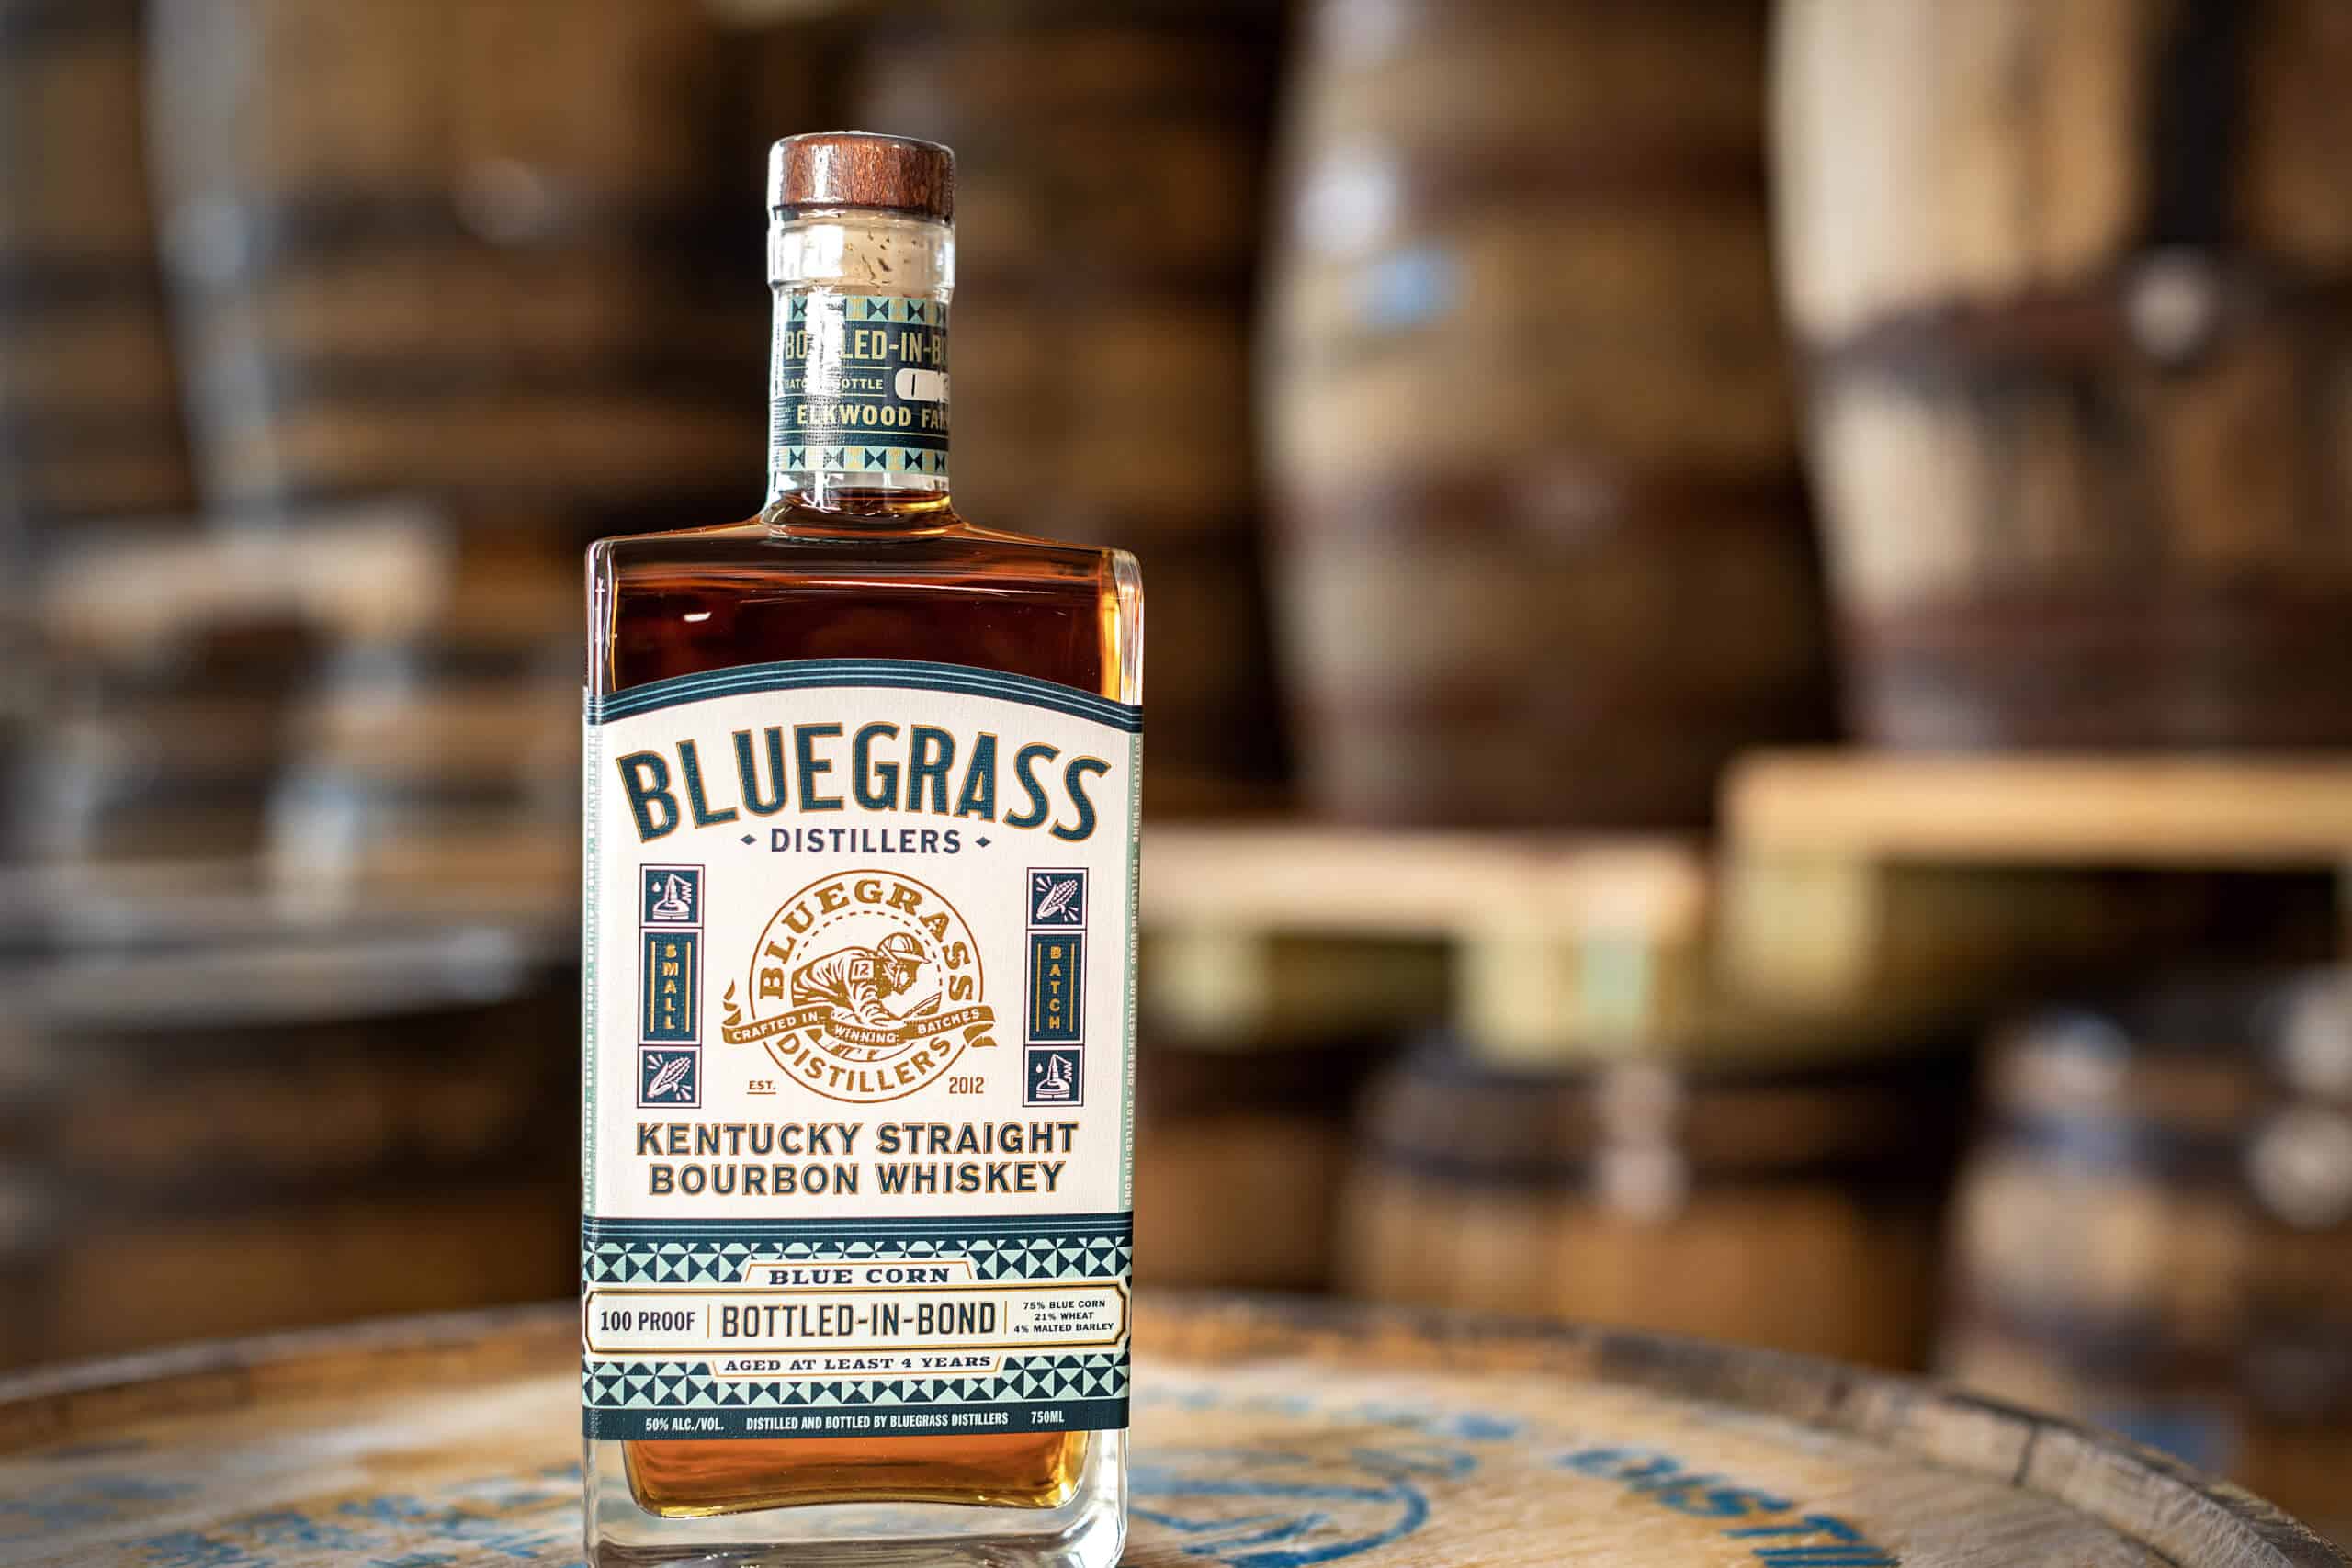 BGD scaled - Bluegrass Distillers Is Releasing First Ever Kentucky Bottled-in-Bond Blue Corn Bourbon